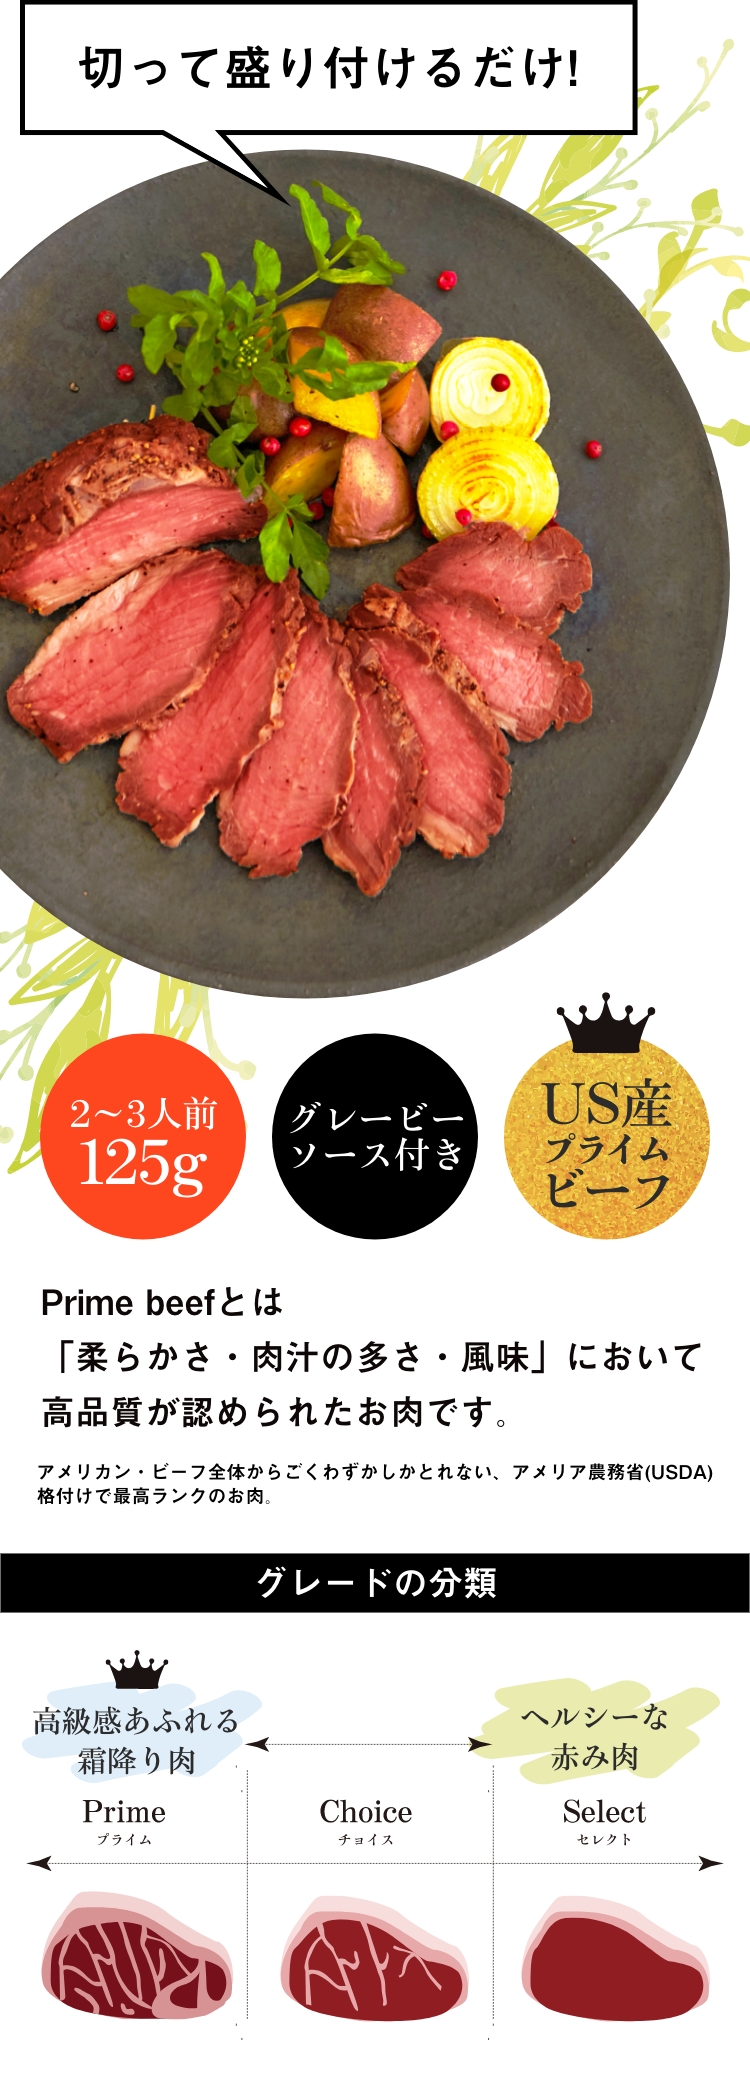 Prime beefとは「柔らかさ・肉汁の多さ・風味」において高品質が認められたお肉です。